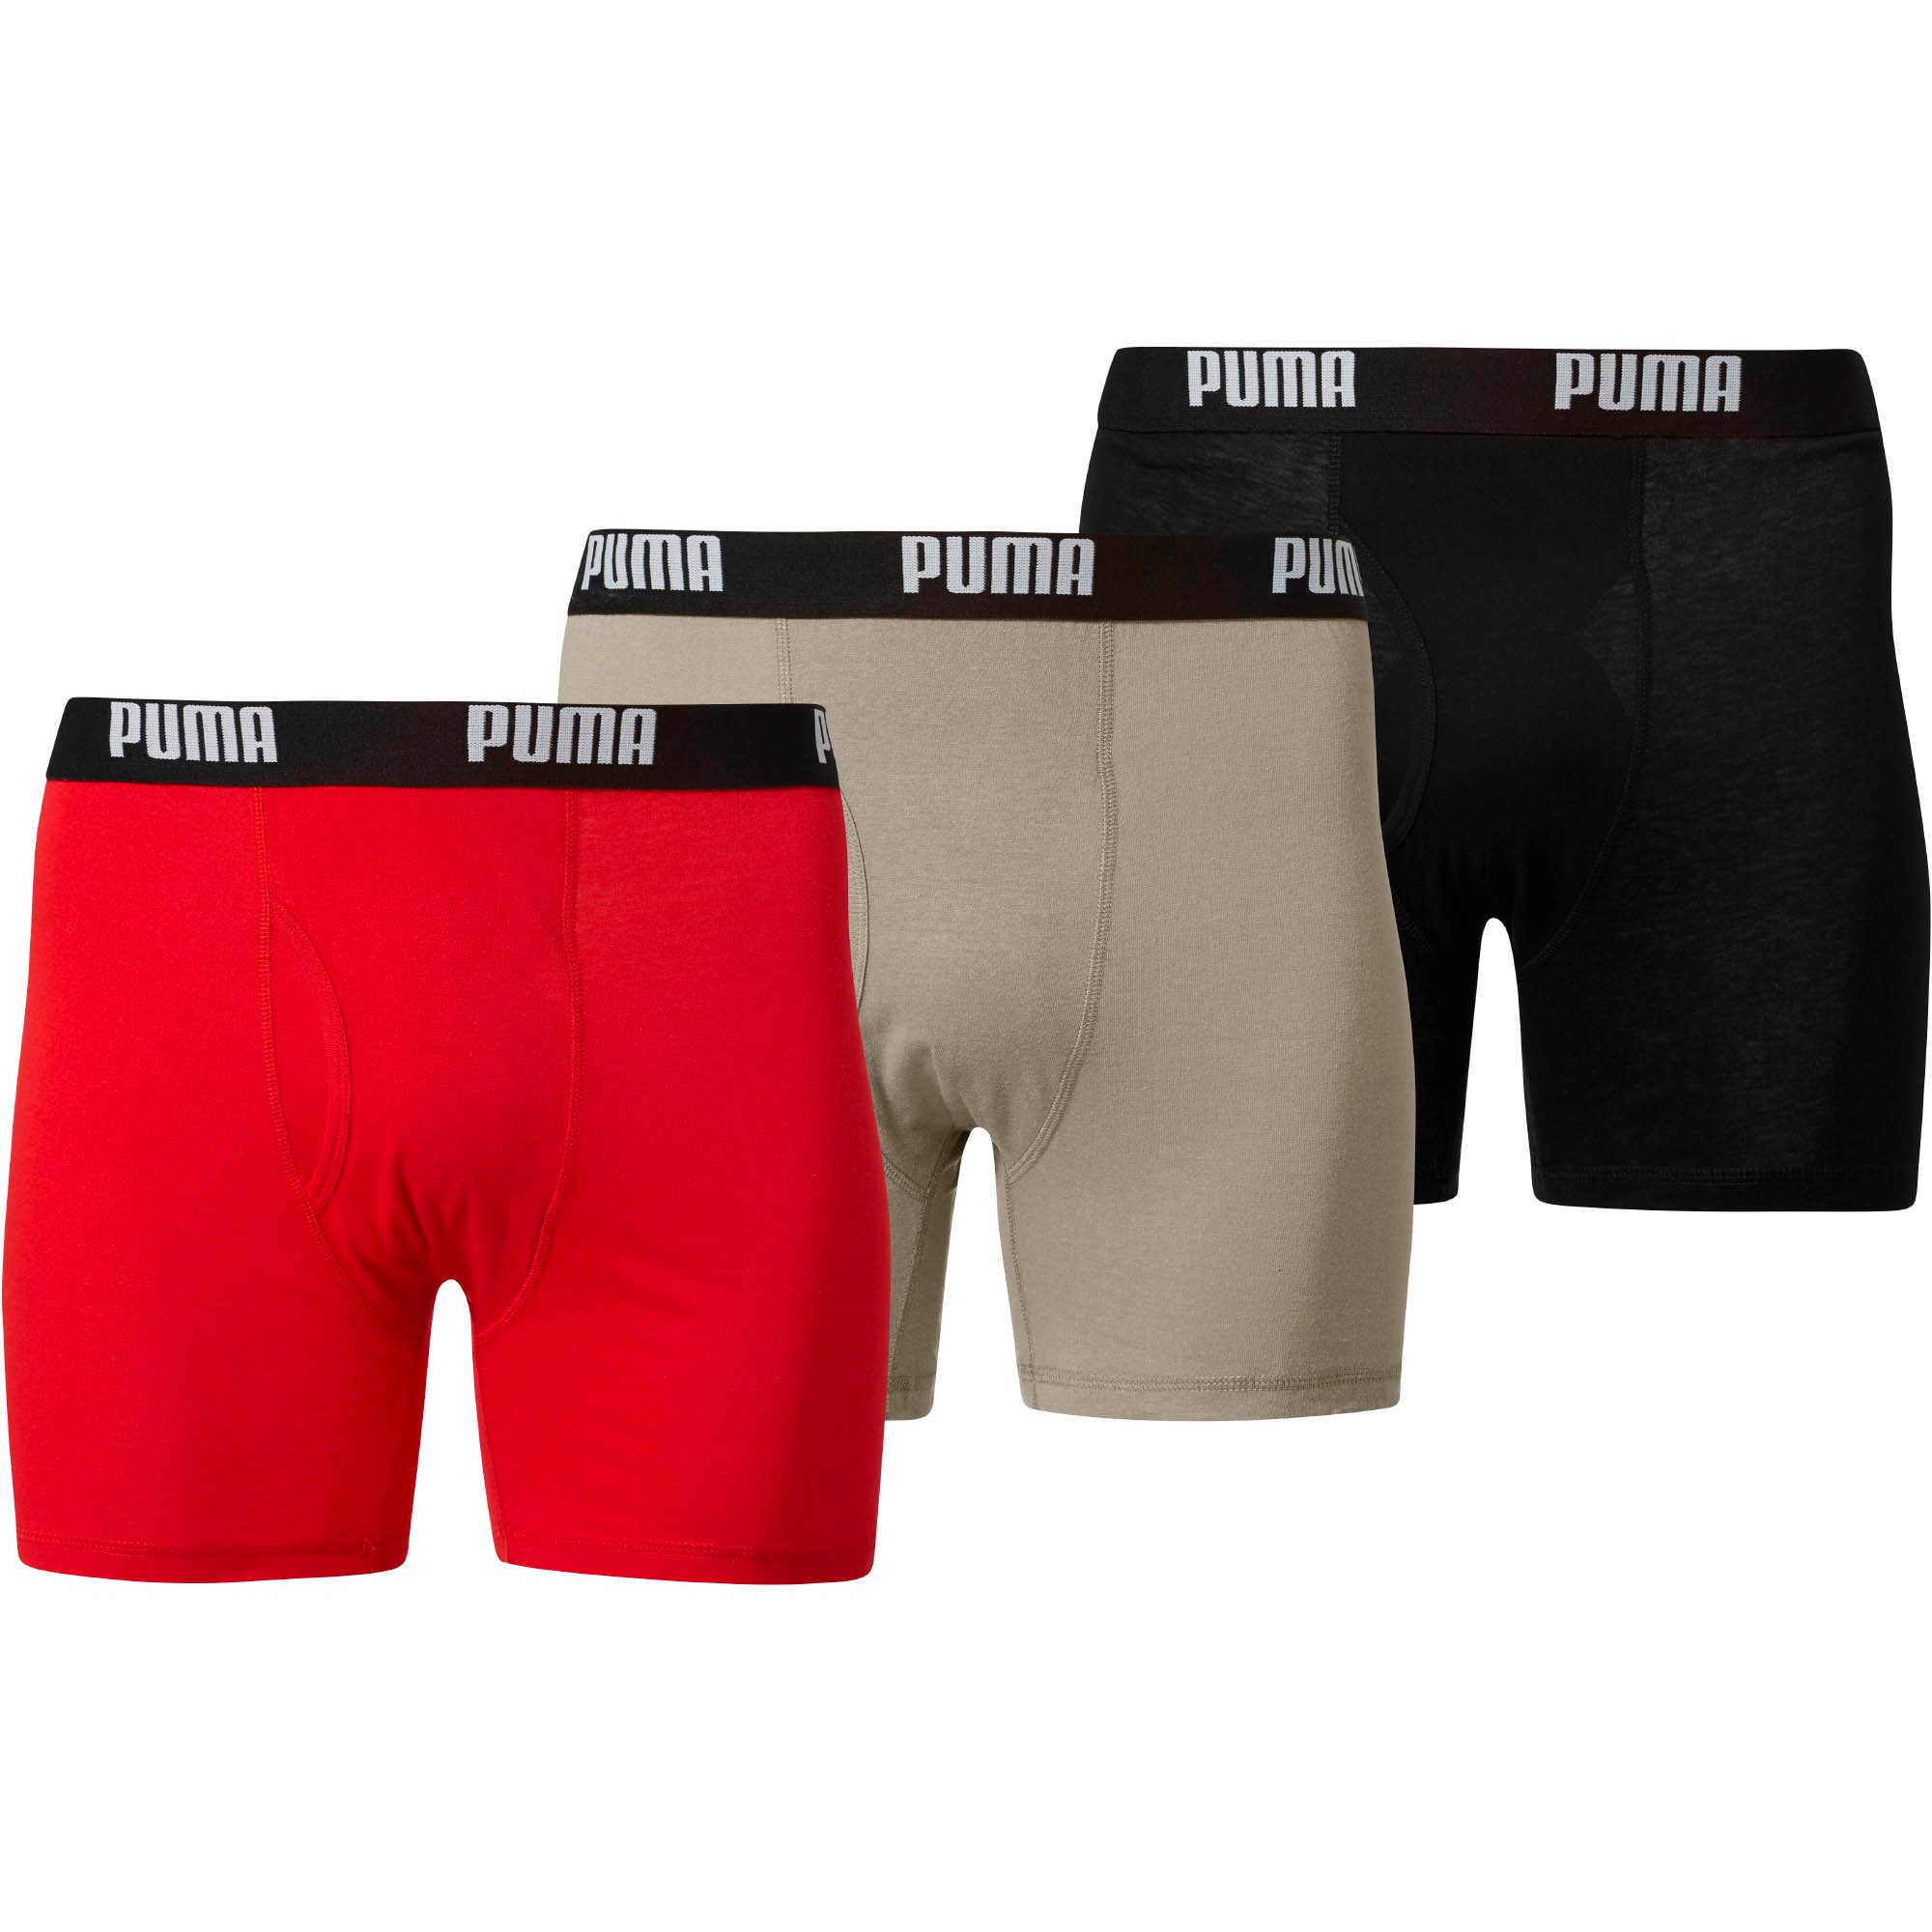 puma 3 pack boxer brief